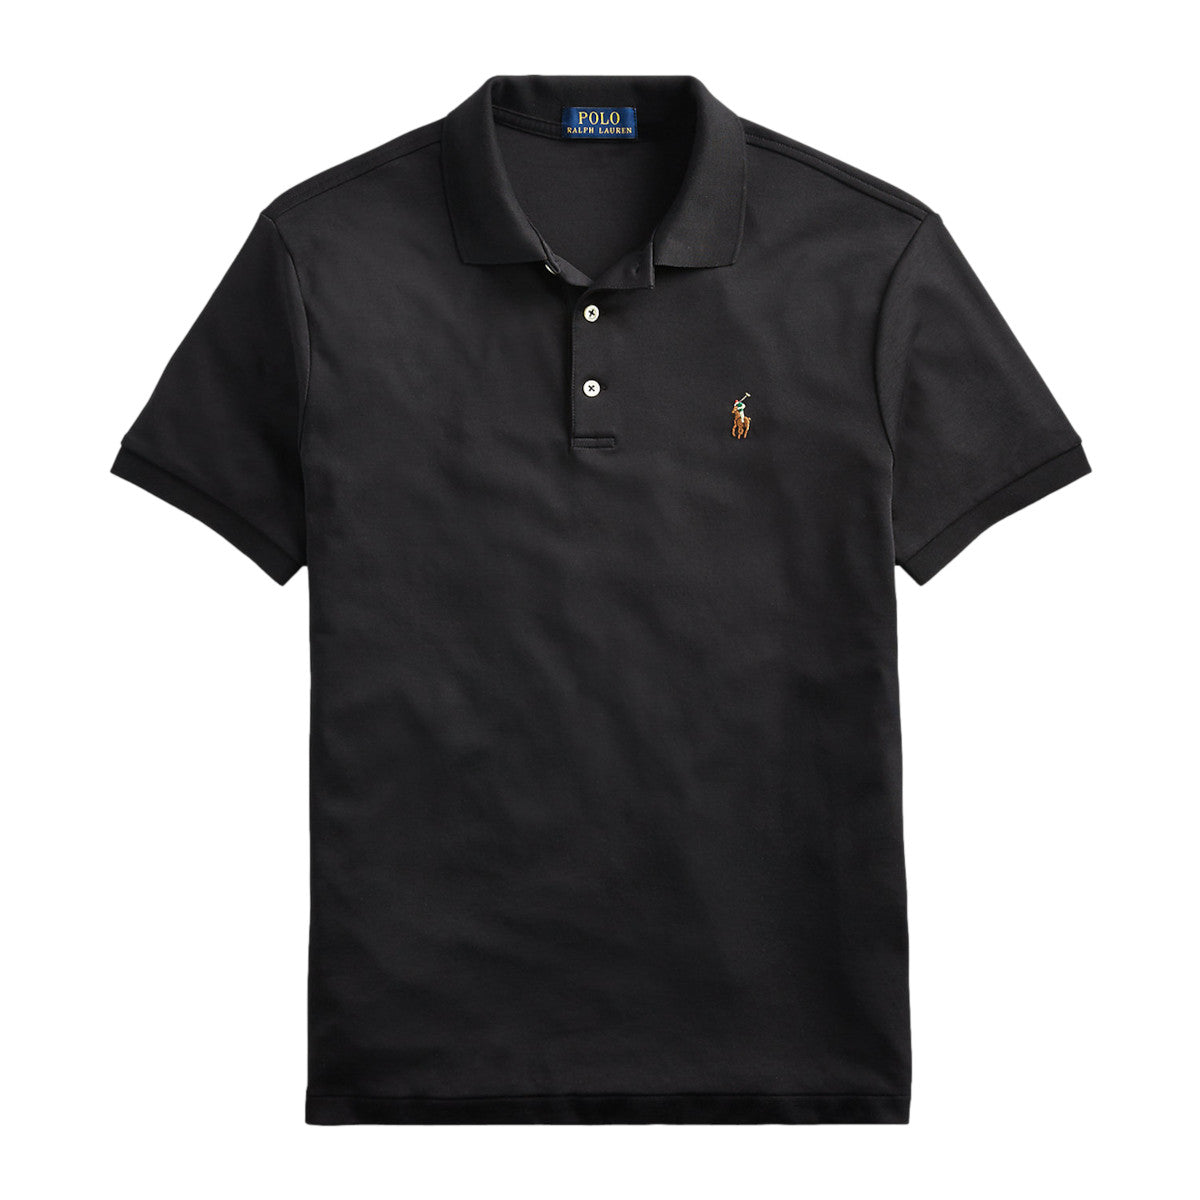 Polo Ralph Lauren SS Polo Shirt 001 Polo Black